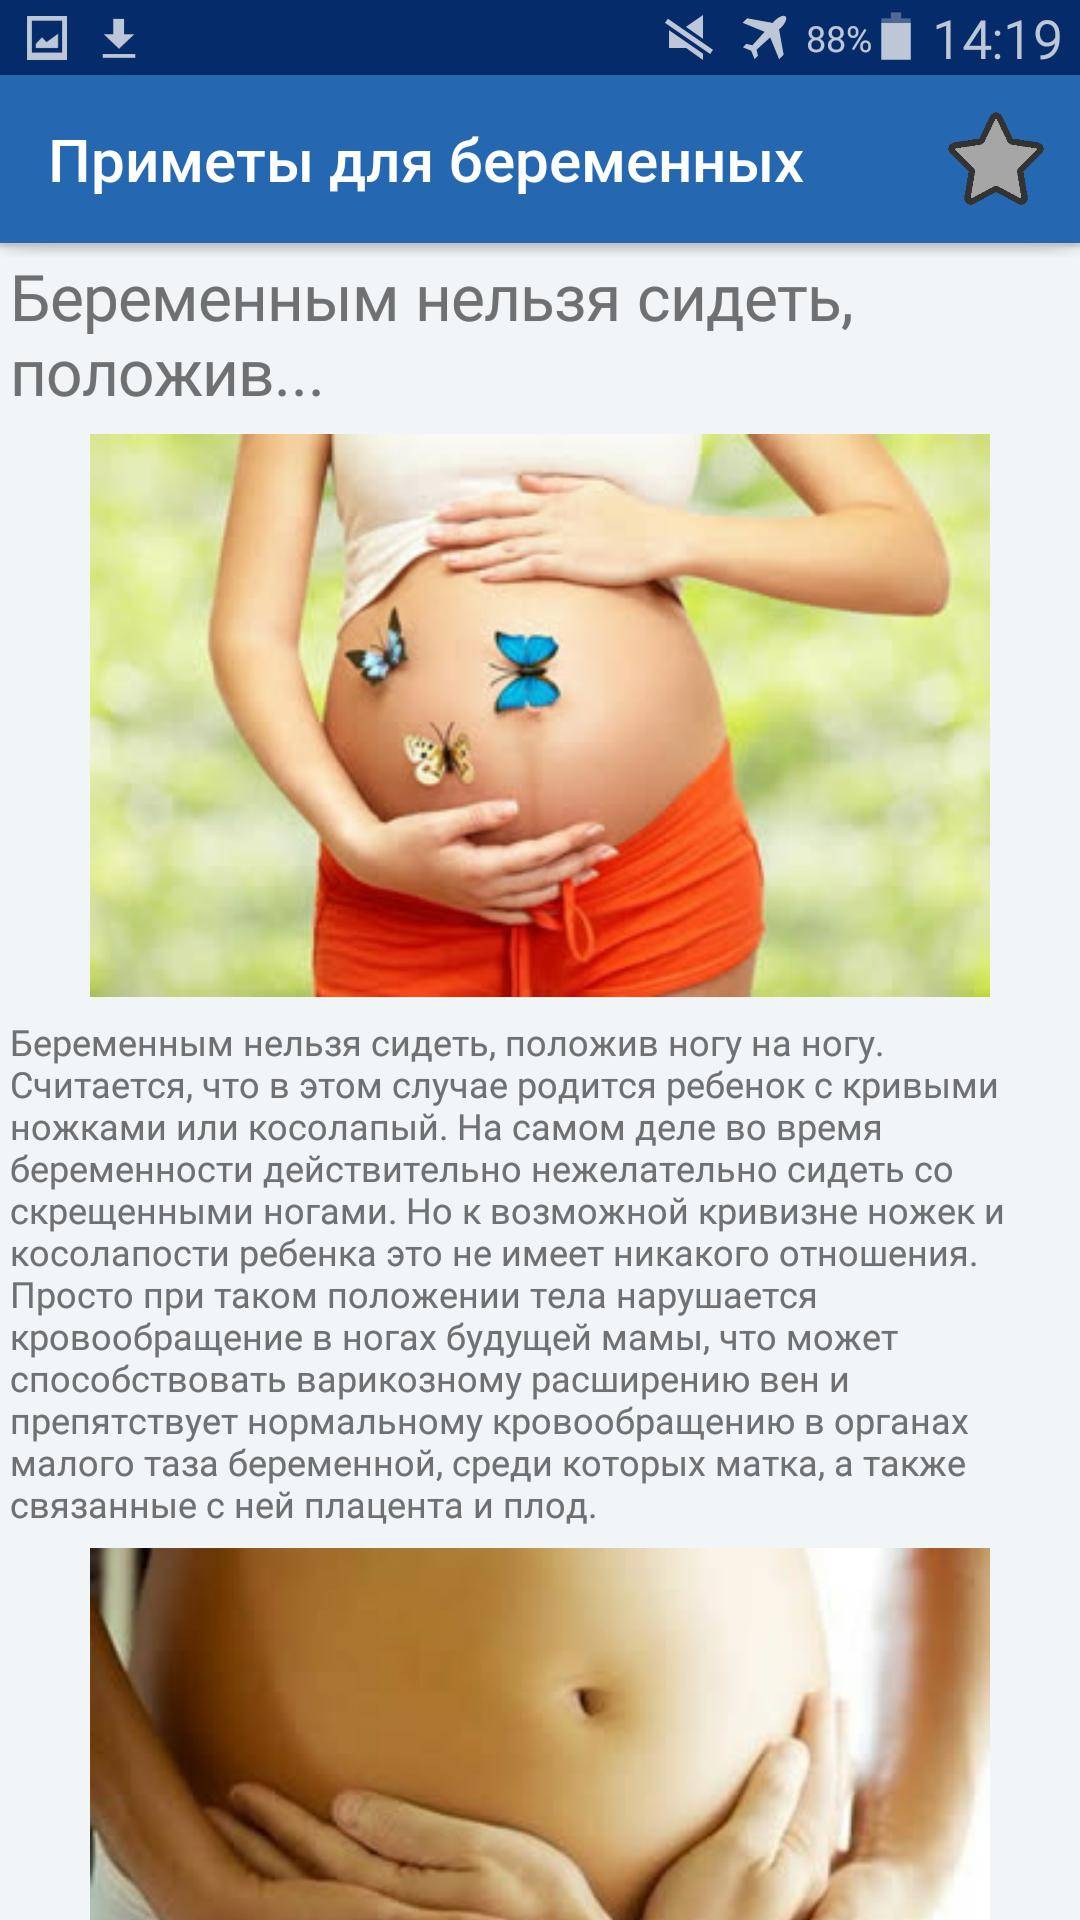 Определение пола ребенка - народные приметы | как узнать пол ребенка по народным приметам при беременности